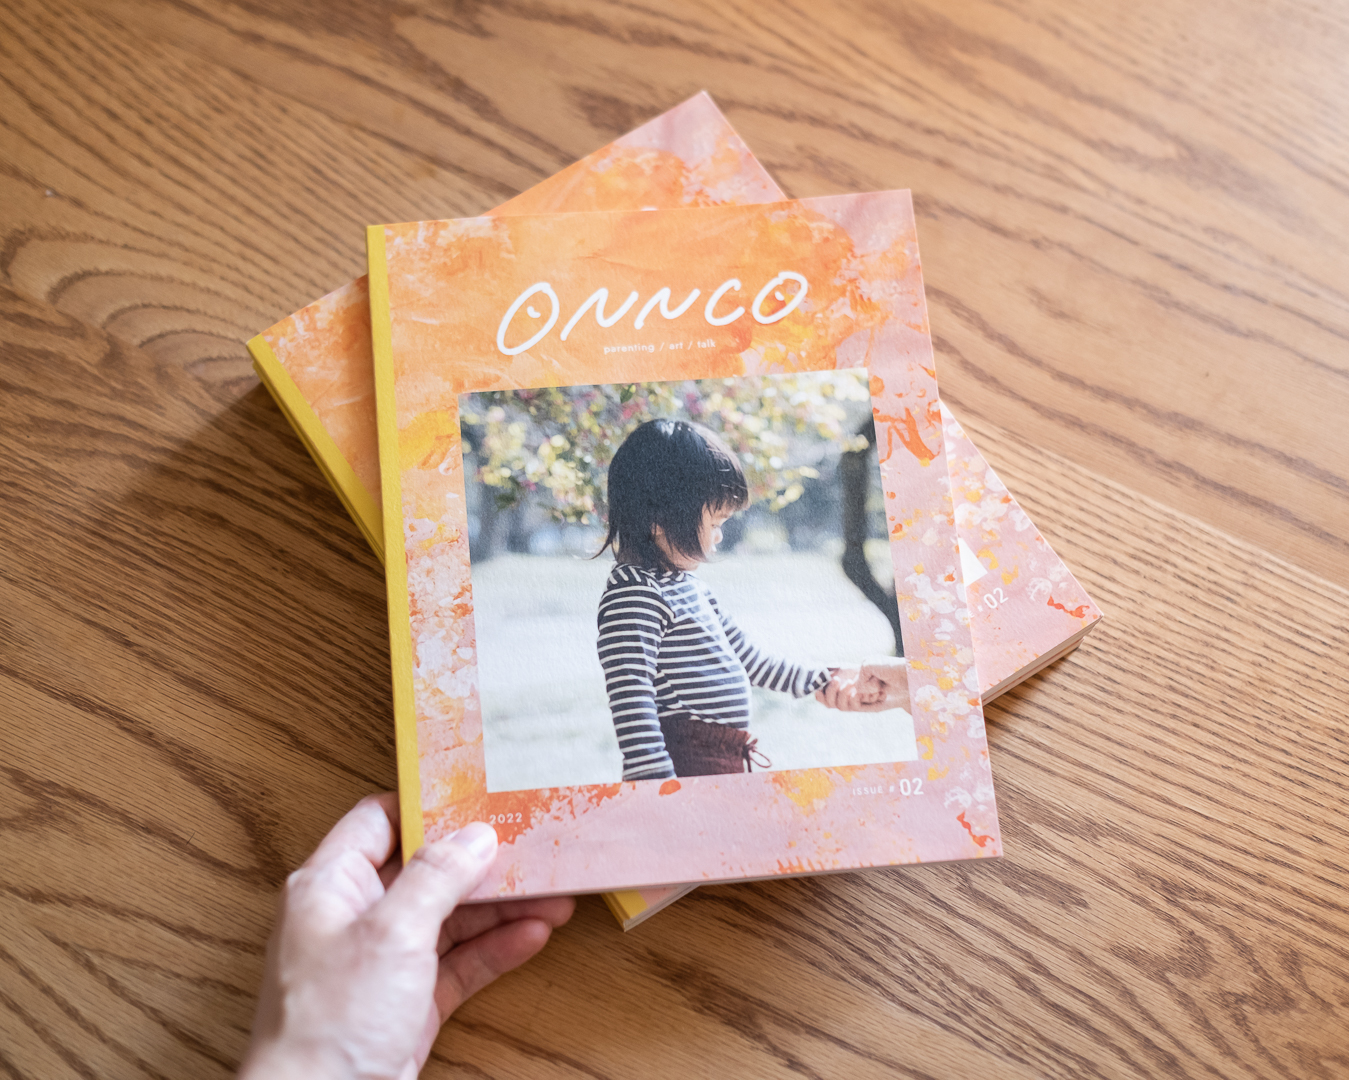 ONNCO Magazine vol.2 ができました!